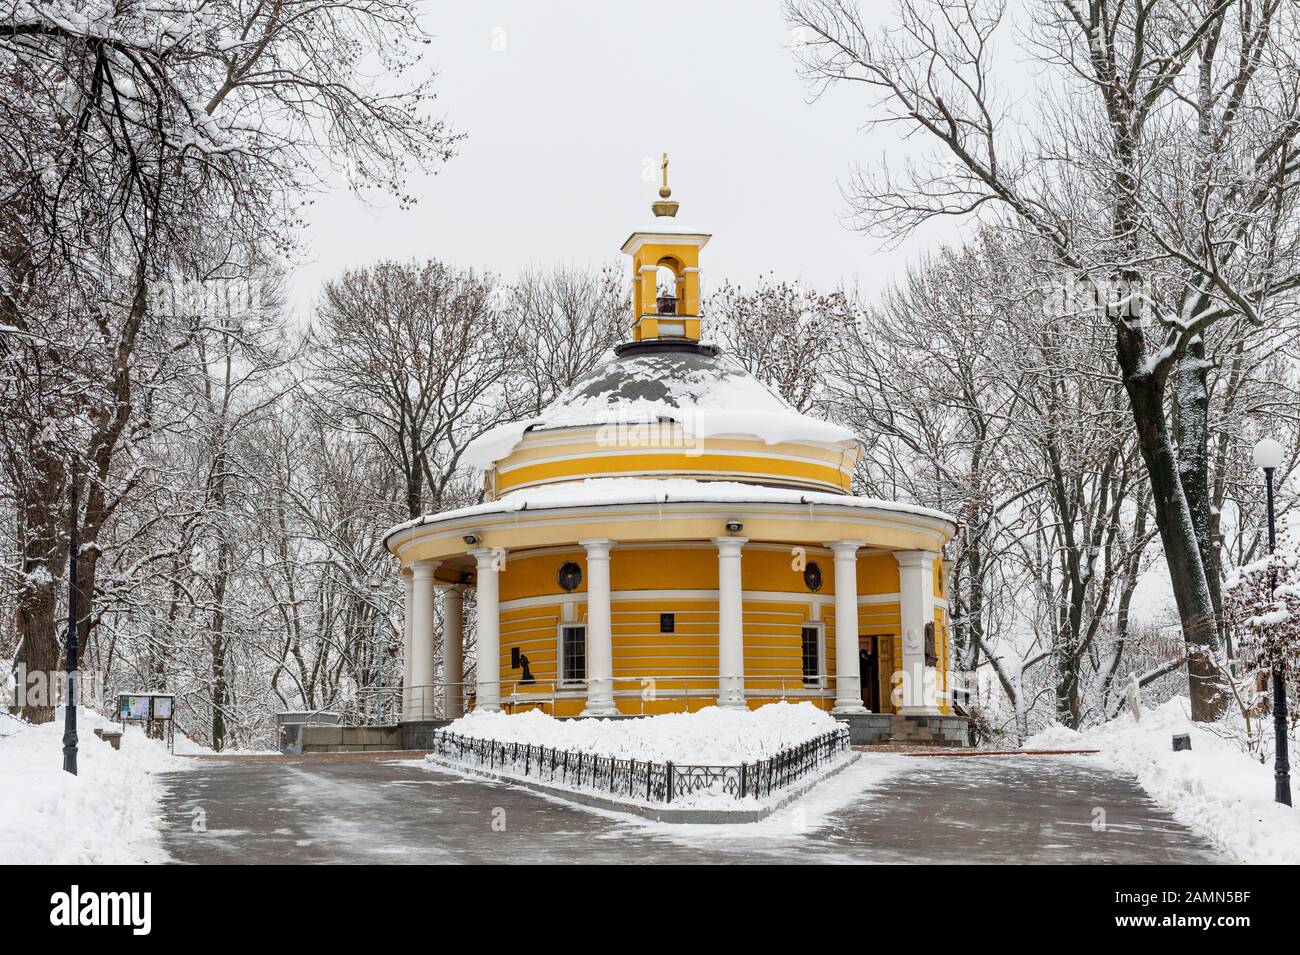 La tombe d'Askold, ancien monument historique dans le quartier historique de Pechersk, avec l'église catholique grecque ukrainienne de Saint-Nicolas construite sur sa place, Kiev, Ukraine Banque D'Images